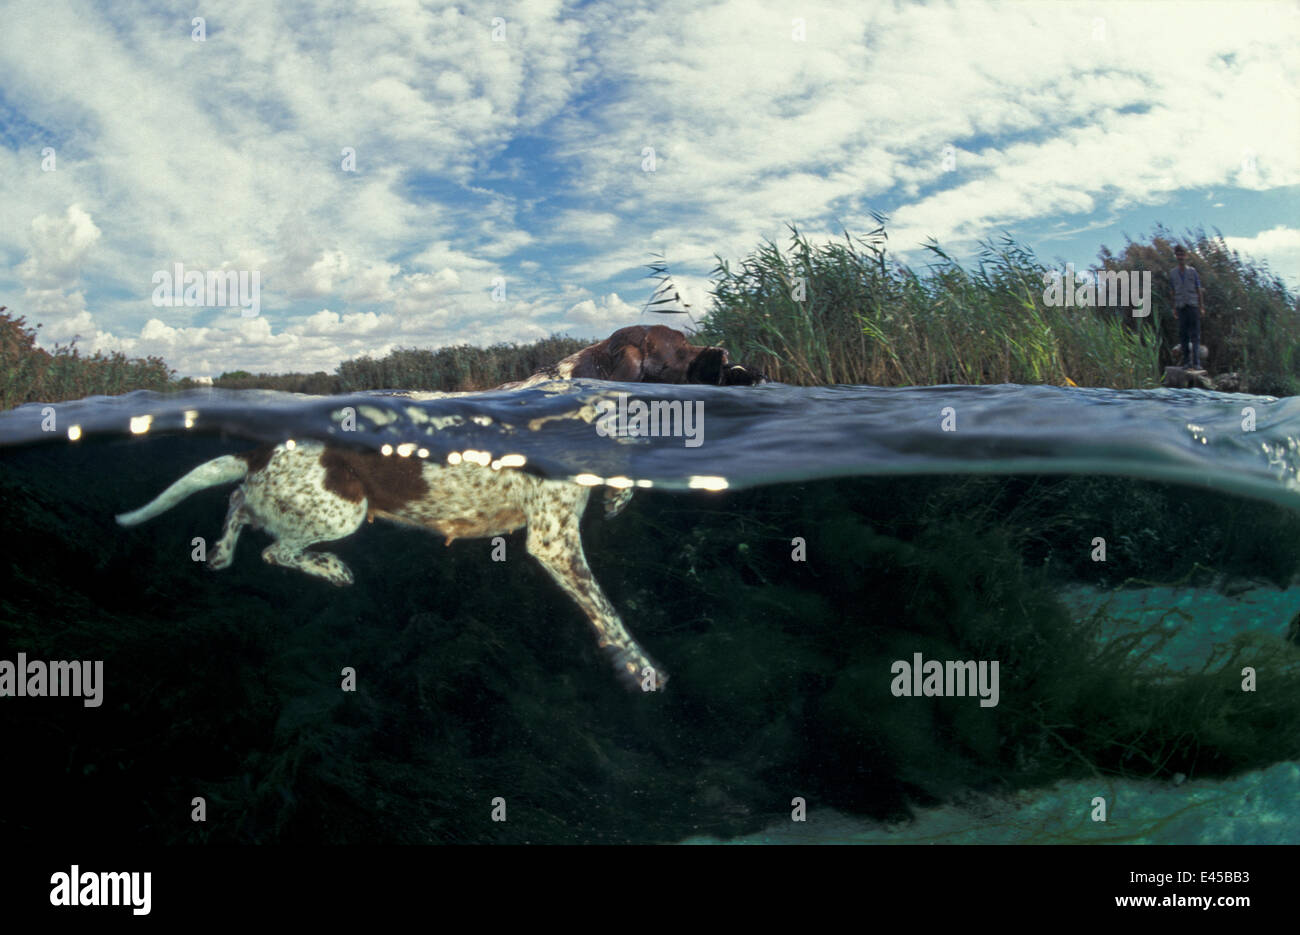 La caccia-dog (spaniel?) recupero shot bird da acqua, a livello diviso, il lago di San Pietro de Bevagna, Italia Foto Stock